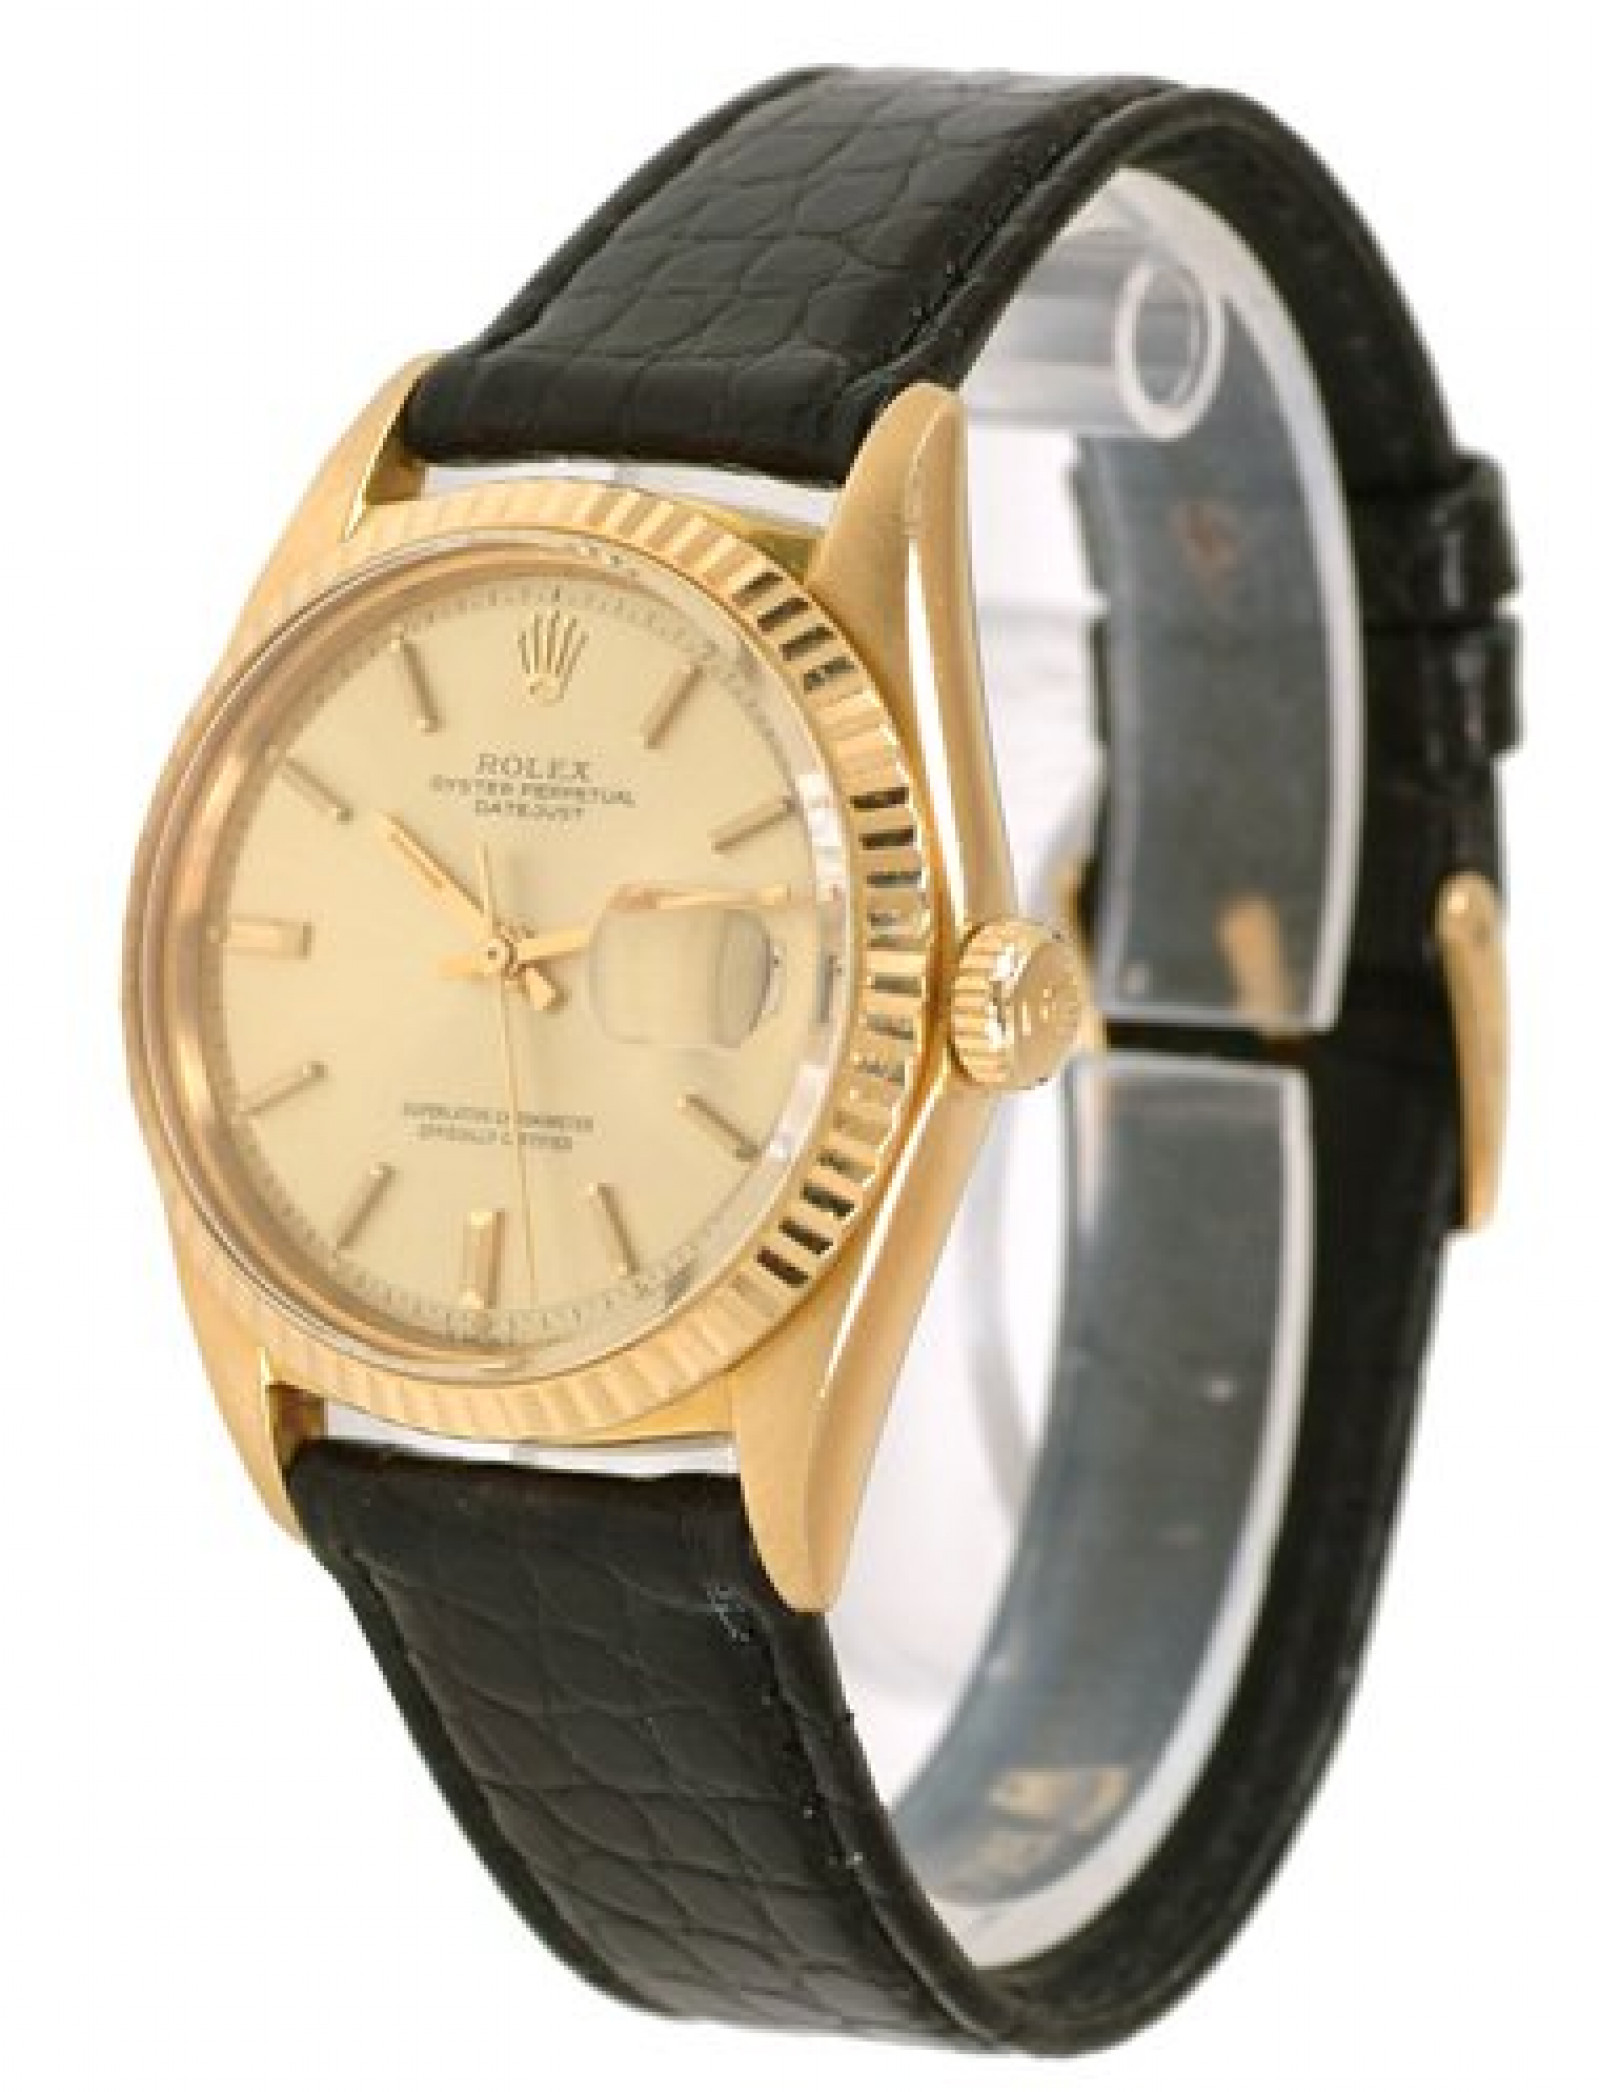 Vintage Rare Rolex Datejust 1601 Gold Year 1966